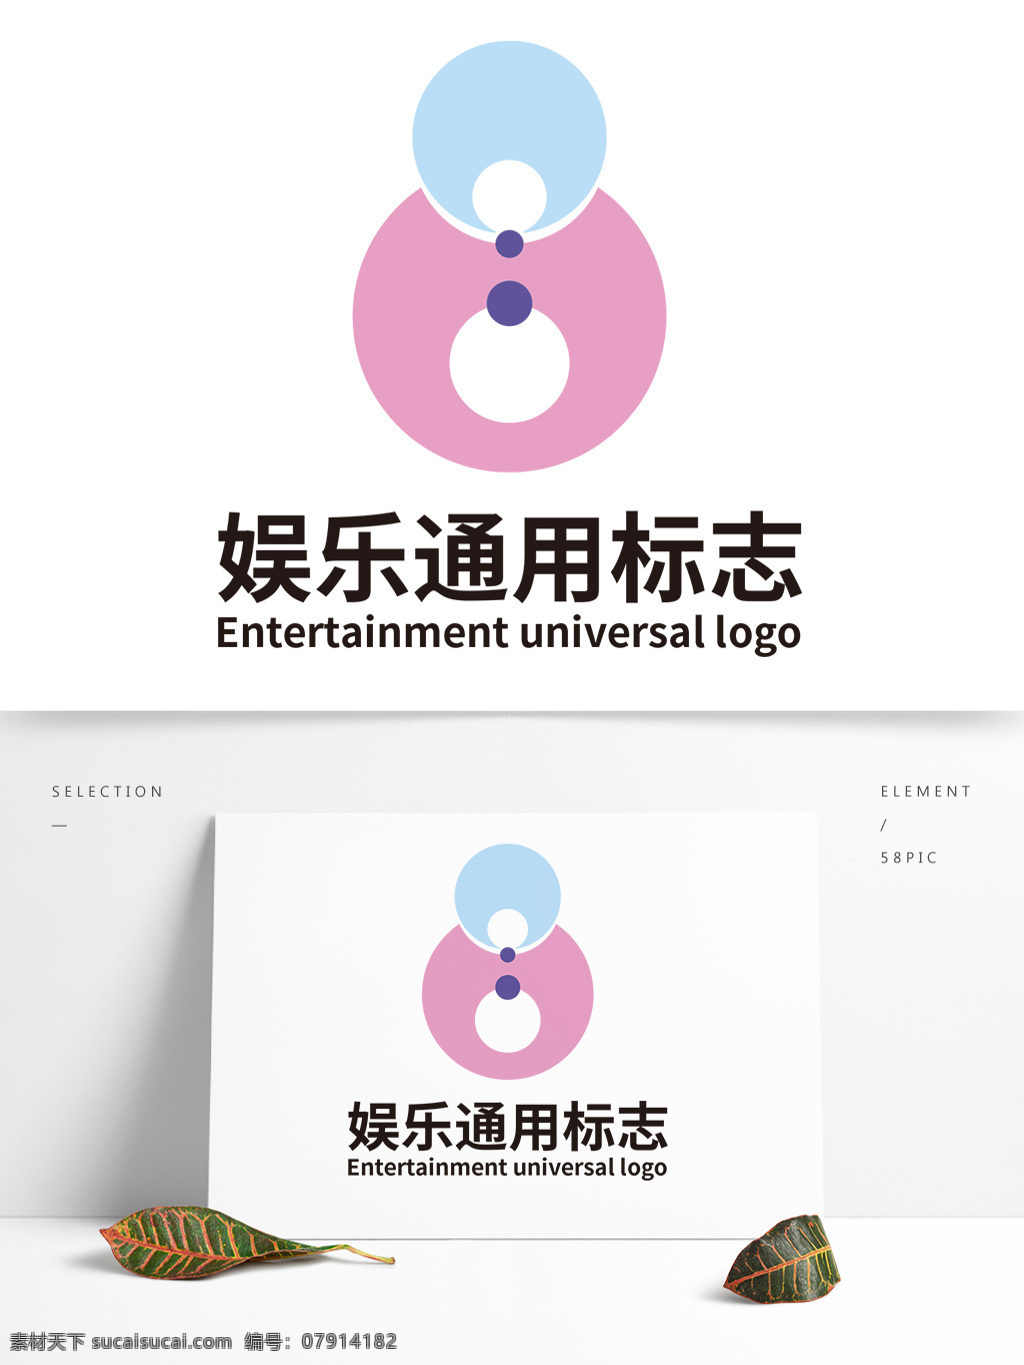 娱乐 通用 标志 粉色 玩偶 人物 形象 葫芦 黄金比例 圆形 logo